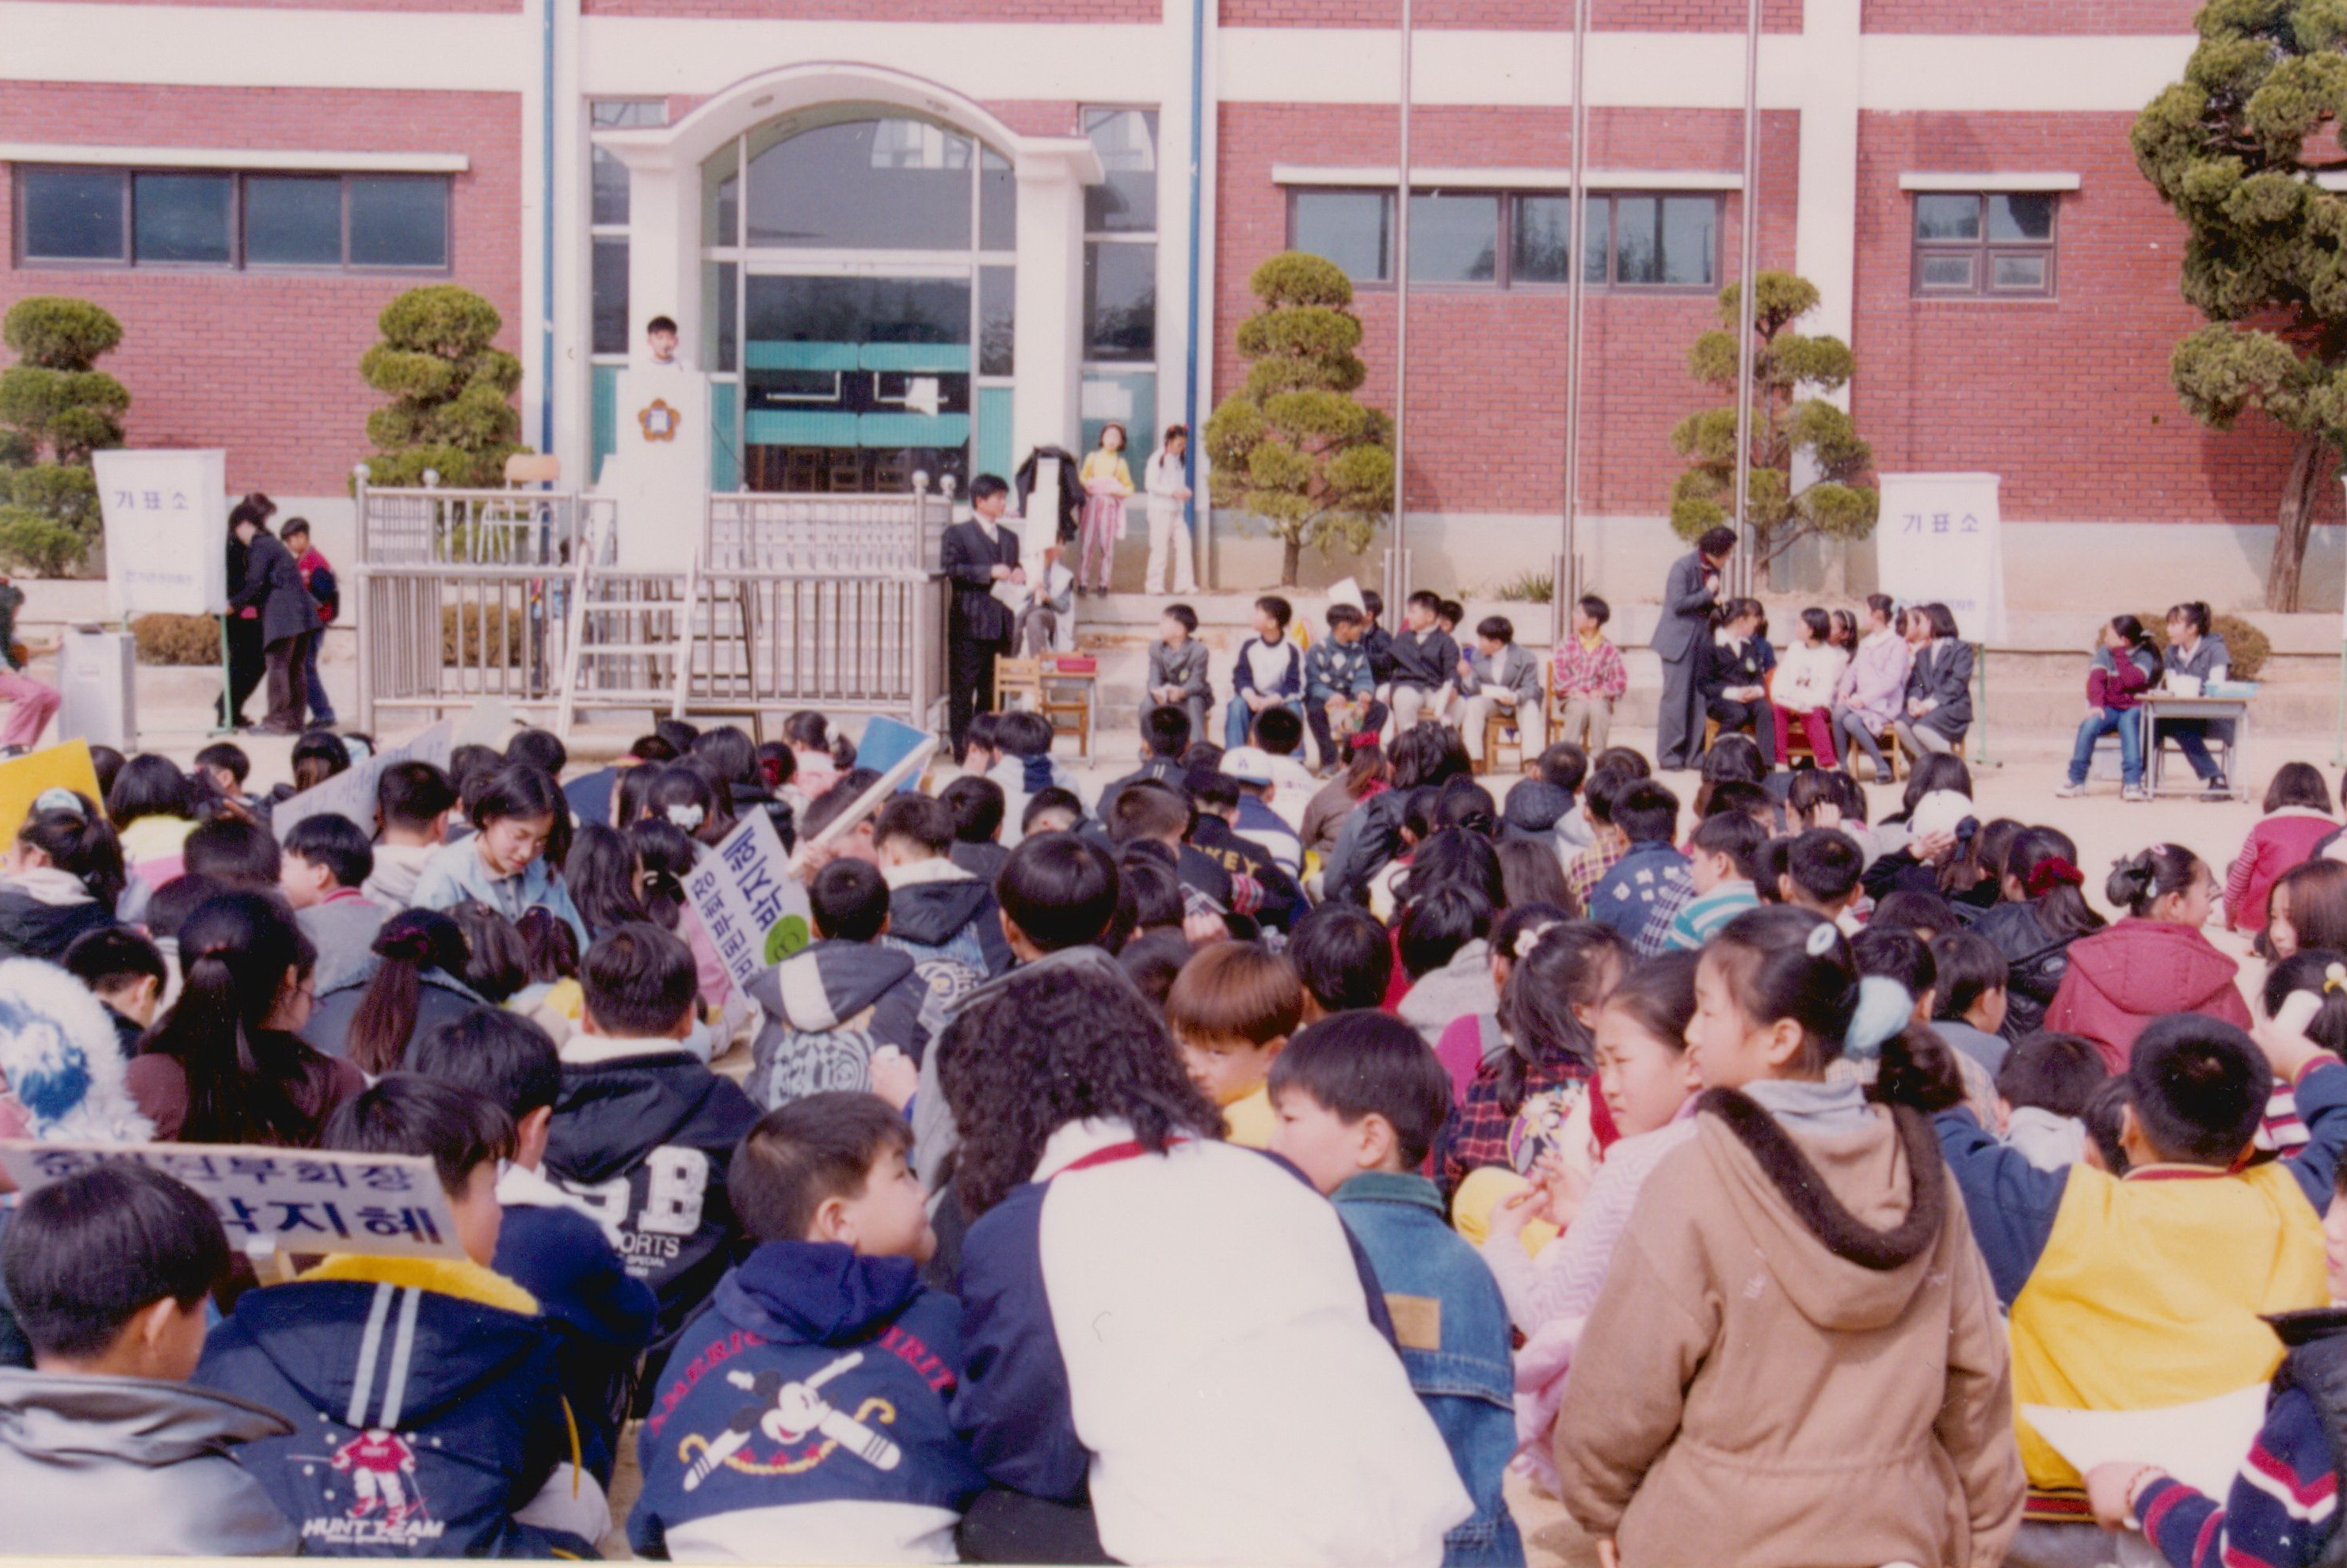 
															
															
																
																	도천초등학교 전교학생회 임원 선거 - 1999년 [1번째 이미지]
																
																
															
														